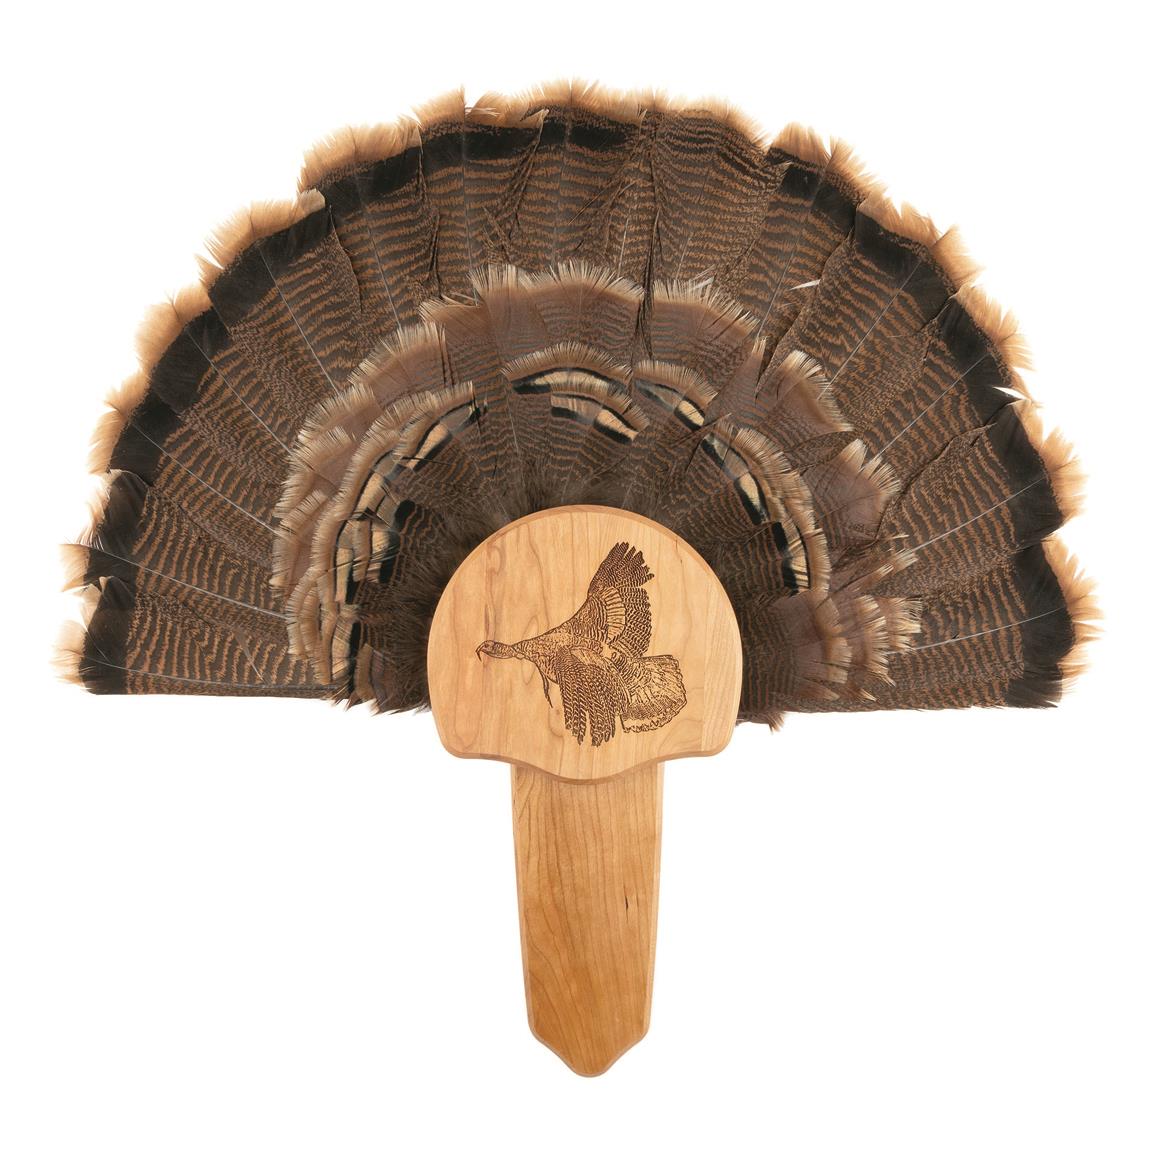 Walnut Hollow Engraved Turkey Fan Mount Kit, Taking Flight